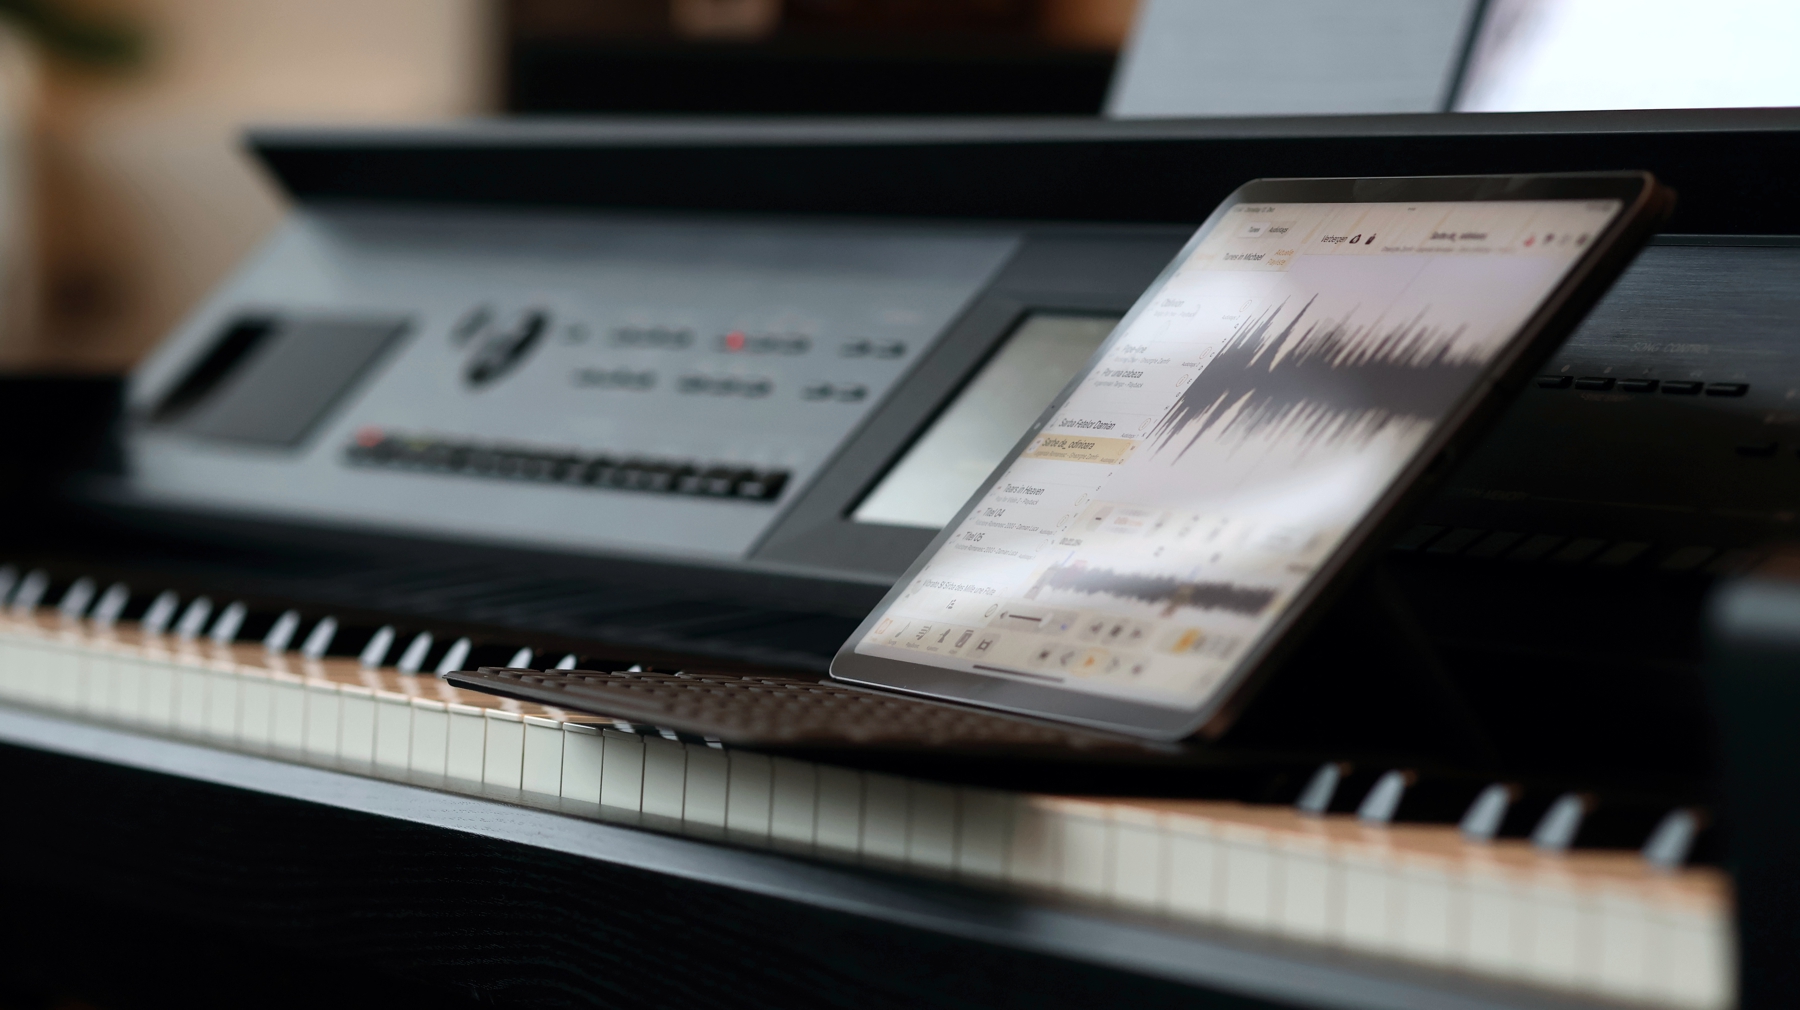 iPad aud Yamaha Digitalpiano